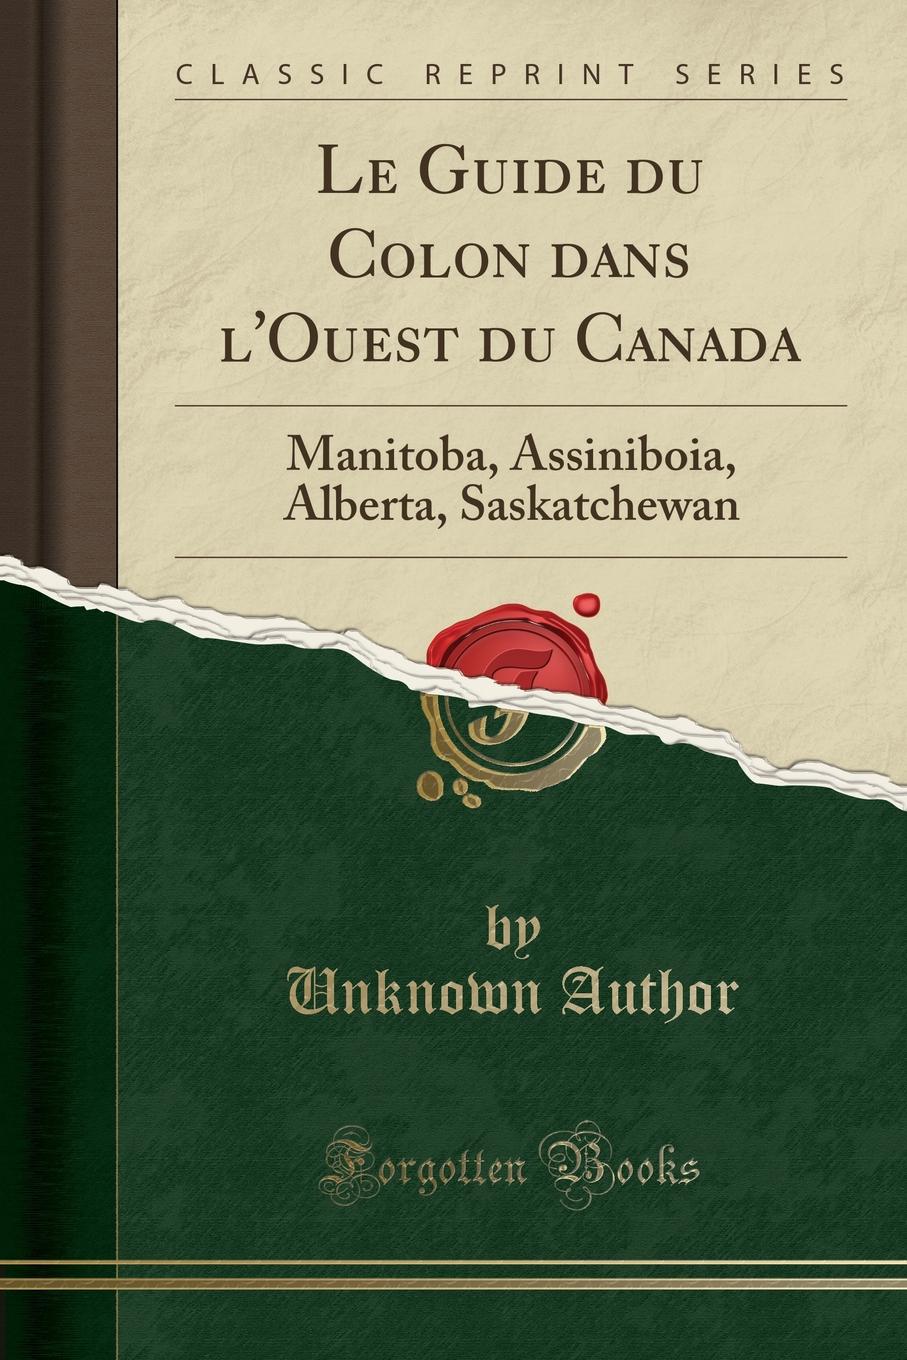 Unknown Author Le Guide du Colon dans l.Ouest du Canada. Manitoba, Assiniboia, Alberta, Saskatchewan (Classic Reprint)